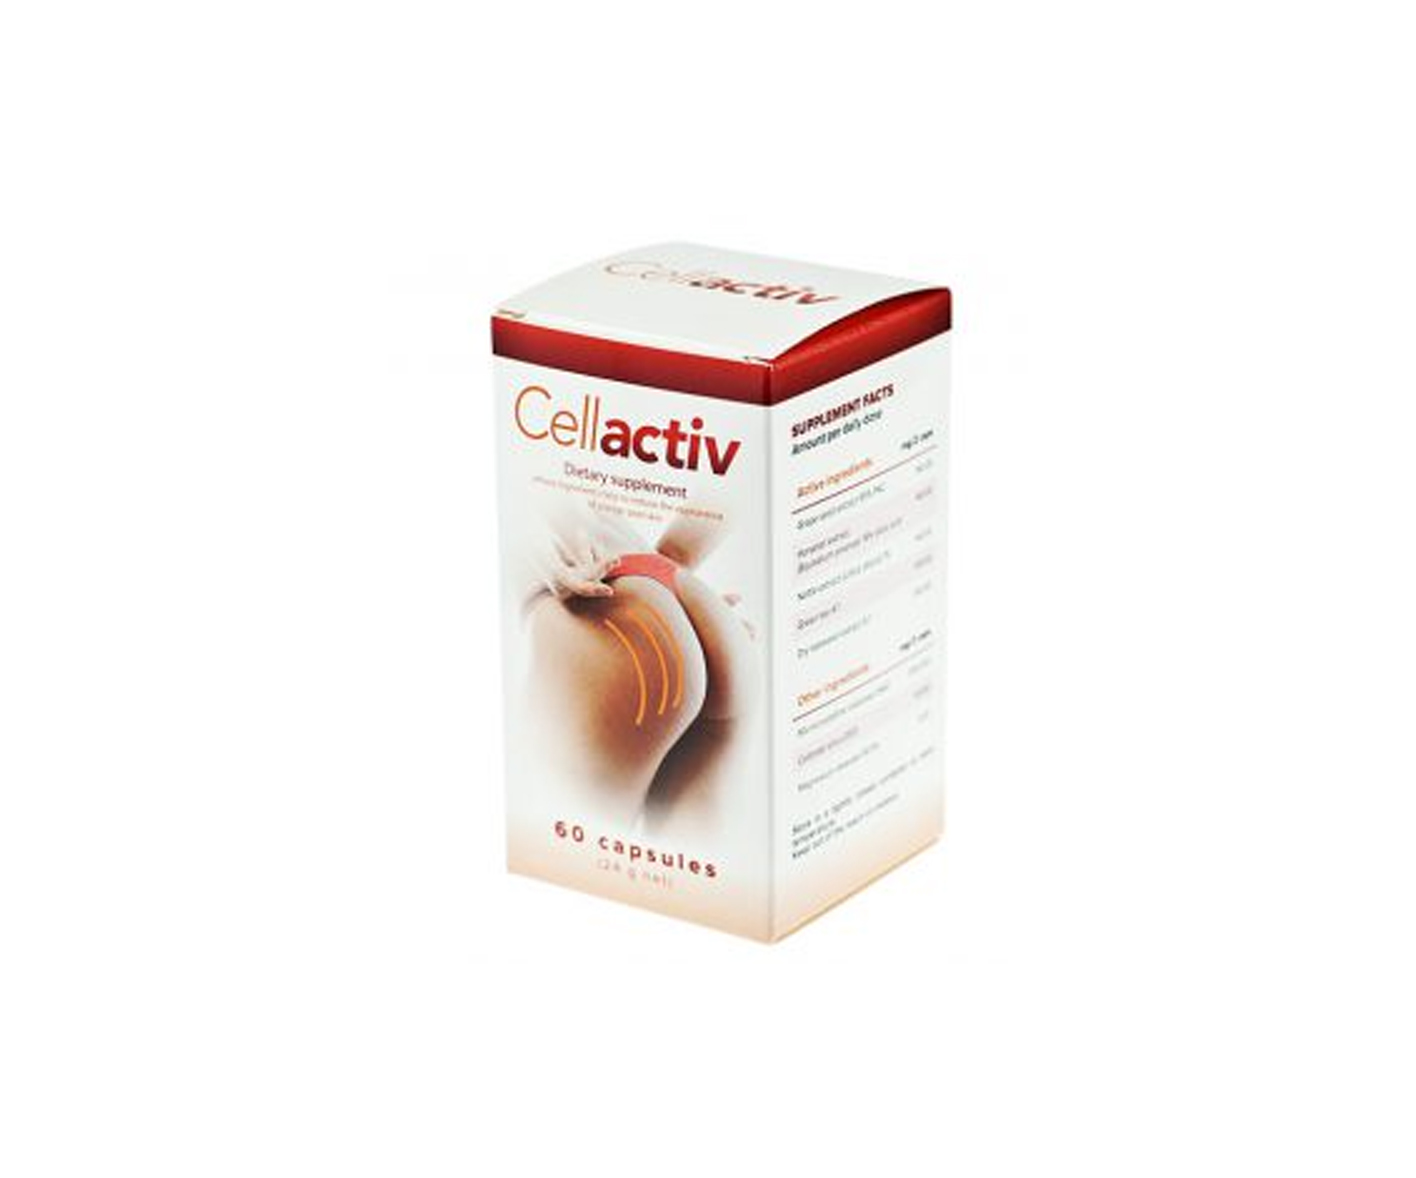 Cellactiv, anti-cellulite pills